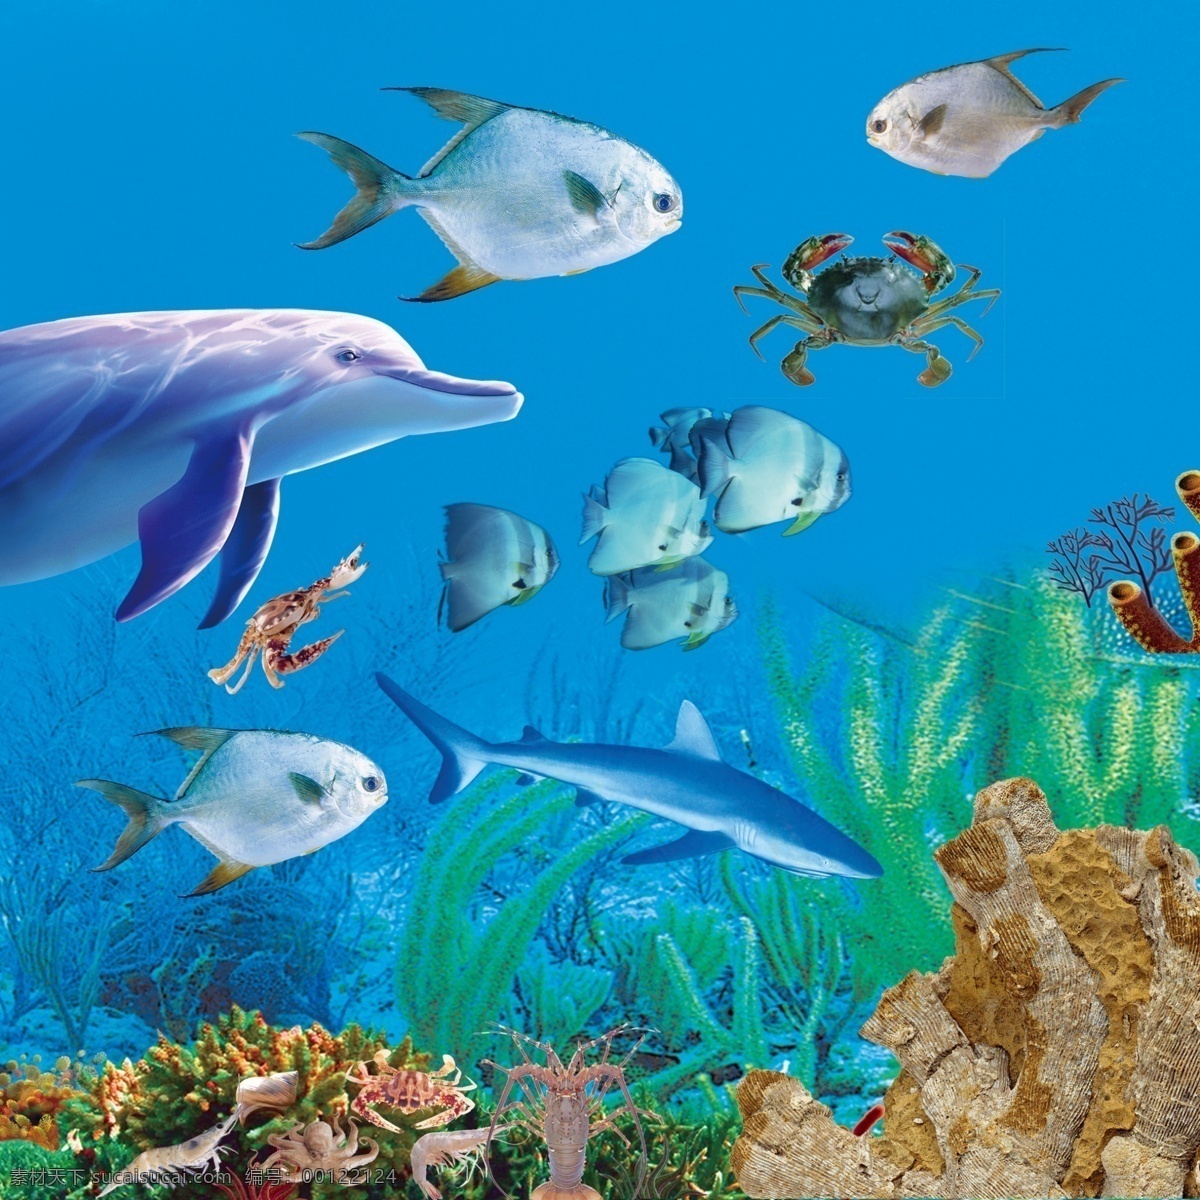 海底世界 海底 世界 模板下载 鲨鱼 珊瑚 海底背景 鱼 海藻 海底素材 源文件 水泡 五颜六色的鱼 分层